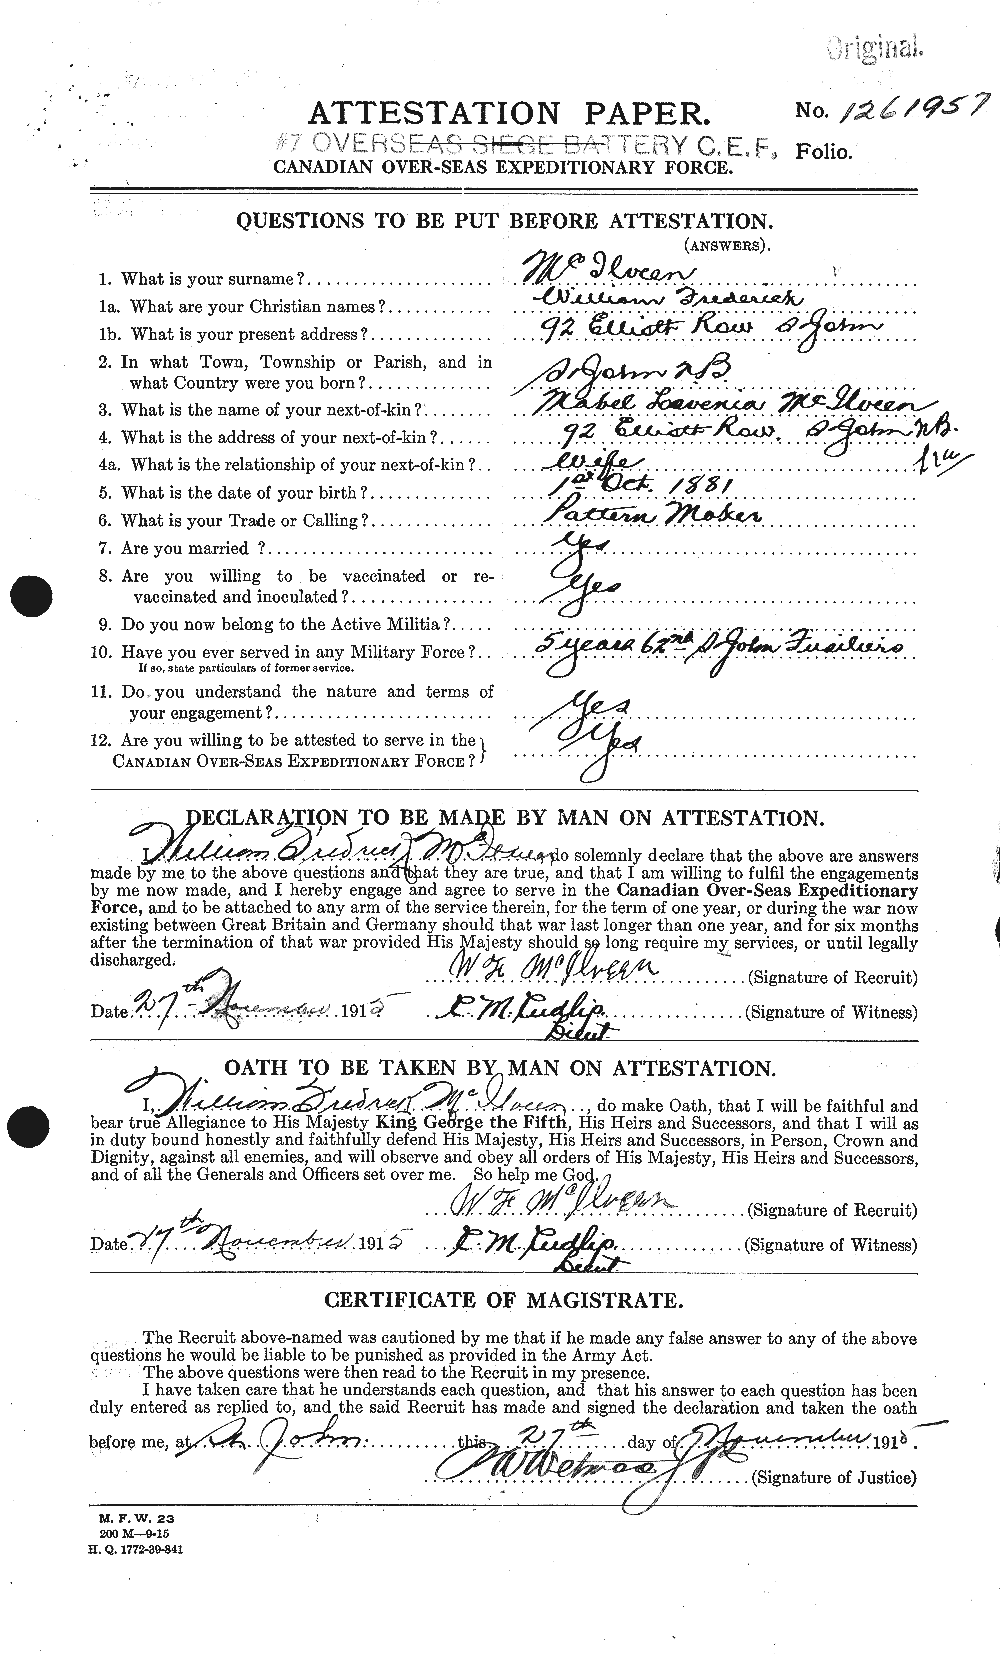 Dossiers du Personnel de la Première Guerre mondiale - CEC 526466a